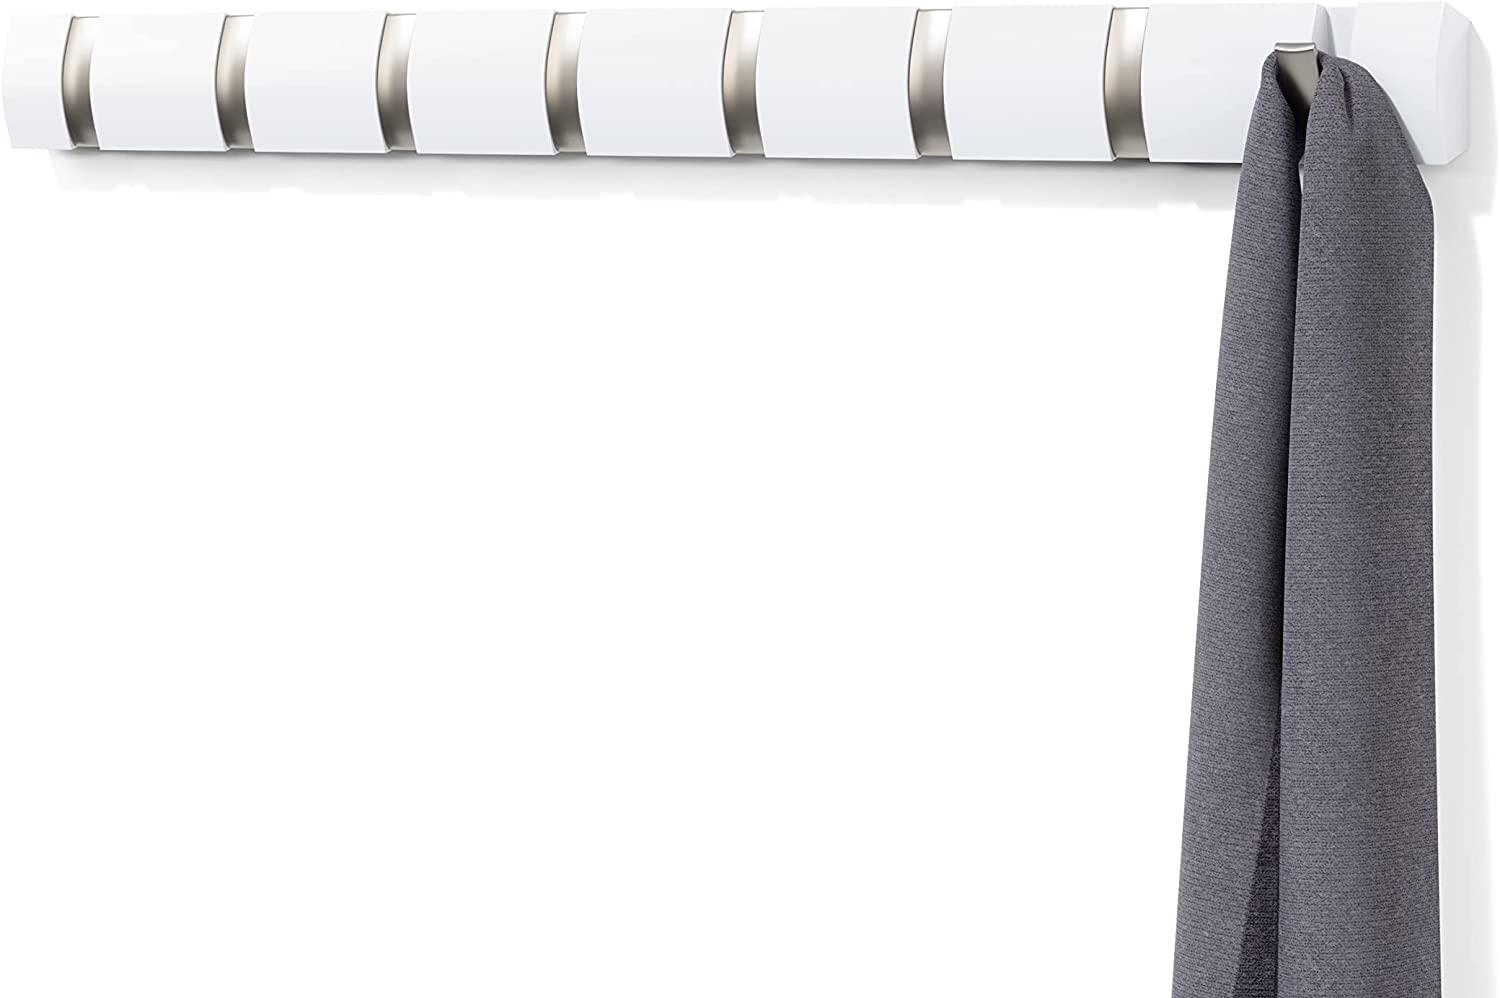 Umbra Flip 8 Garderobenhaken – Moderne, Schlichte und Platzsparende Garderobenleiste mit 8 Beweglichen Haken für Jacken, Mäntel, Schals, Handtaschen und Mehr, Hochglanz Weiß Bild 1